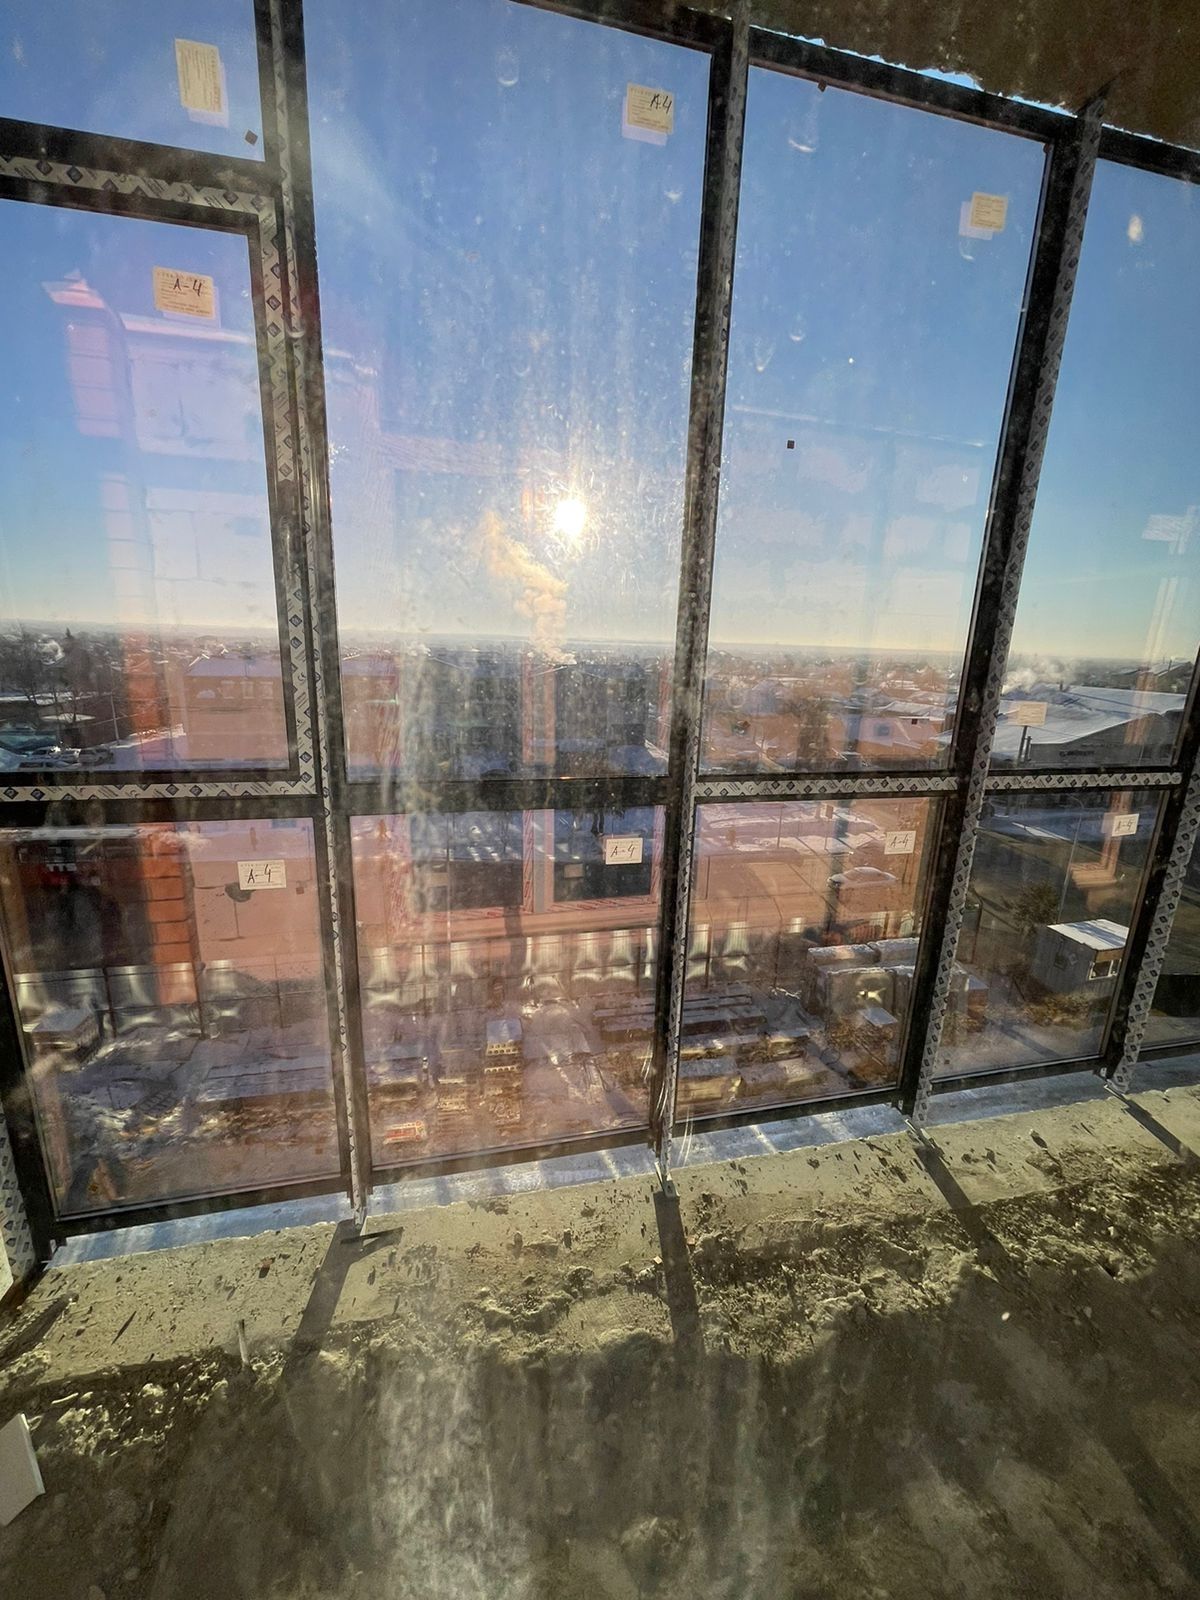 Пластиковые окна,  обшивка балкона